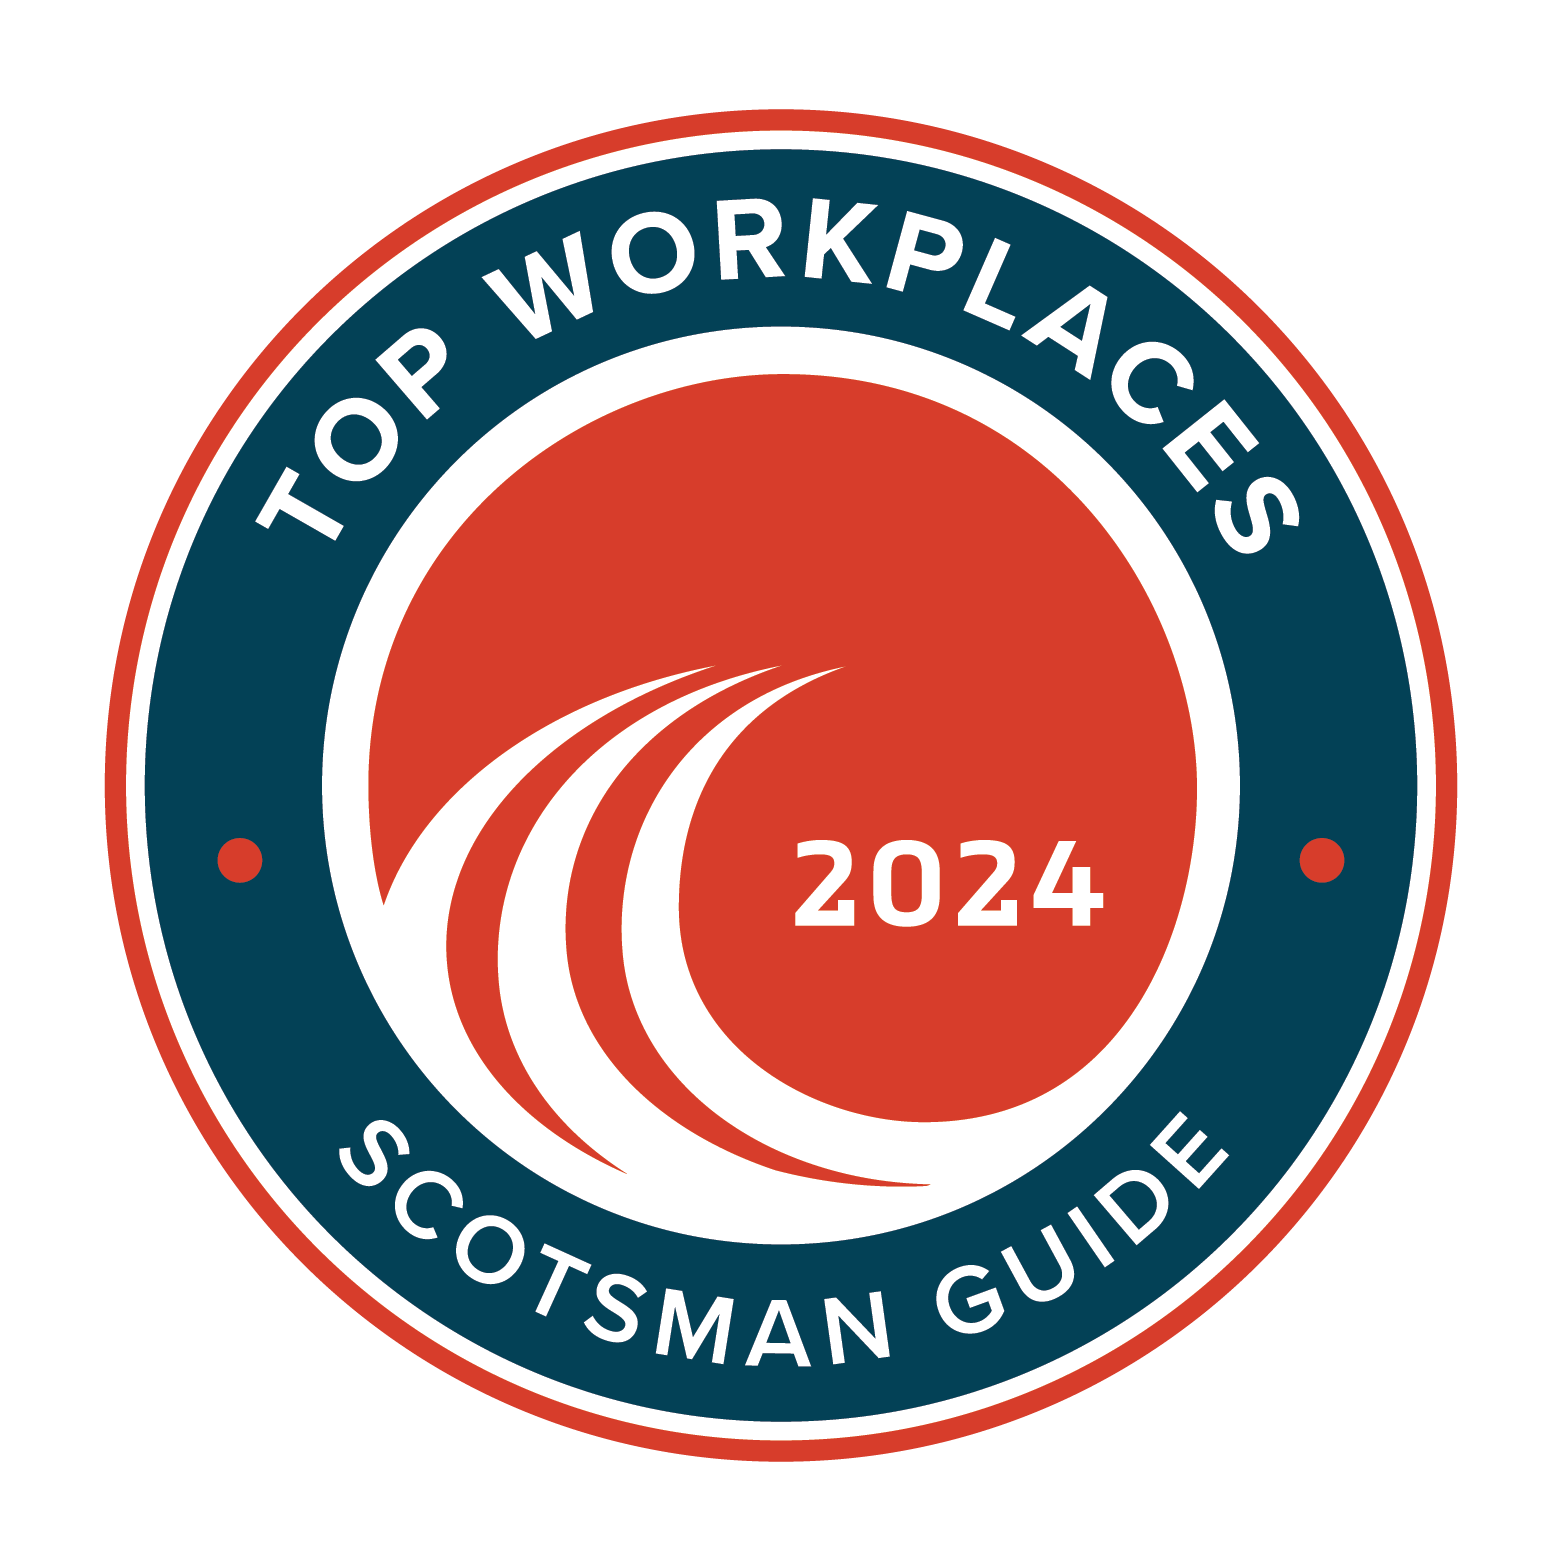 Scotsman Guide Award 2024 badge